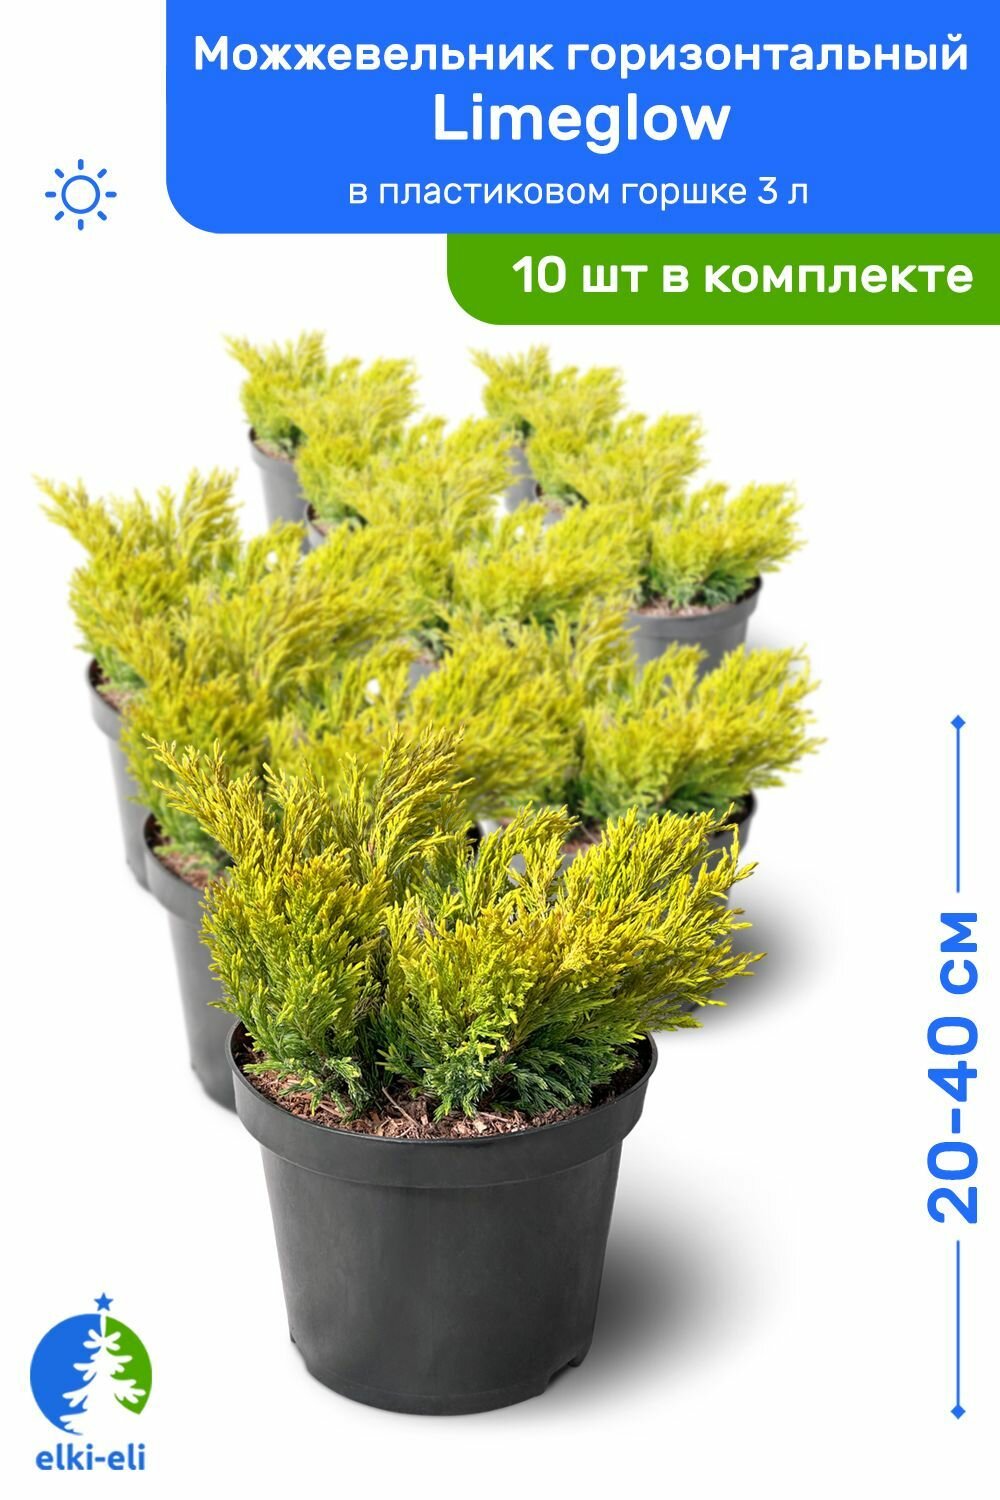 Можжевельник горизонтальный Limeglow (Лаймглоу) 20-40 см в пластиковом горшке 3 л саженец живое хвойное растение комплект из 10 шт